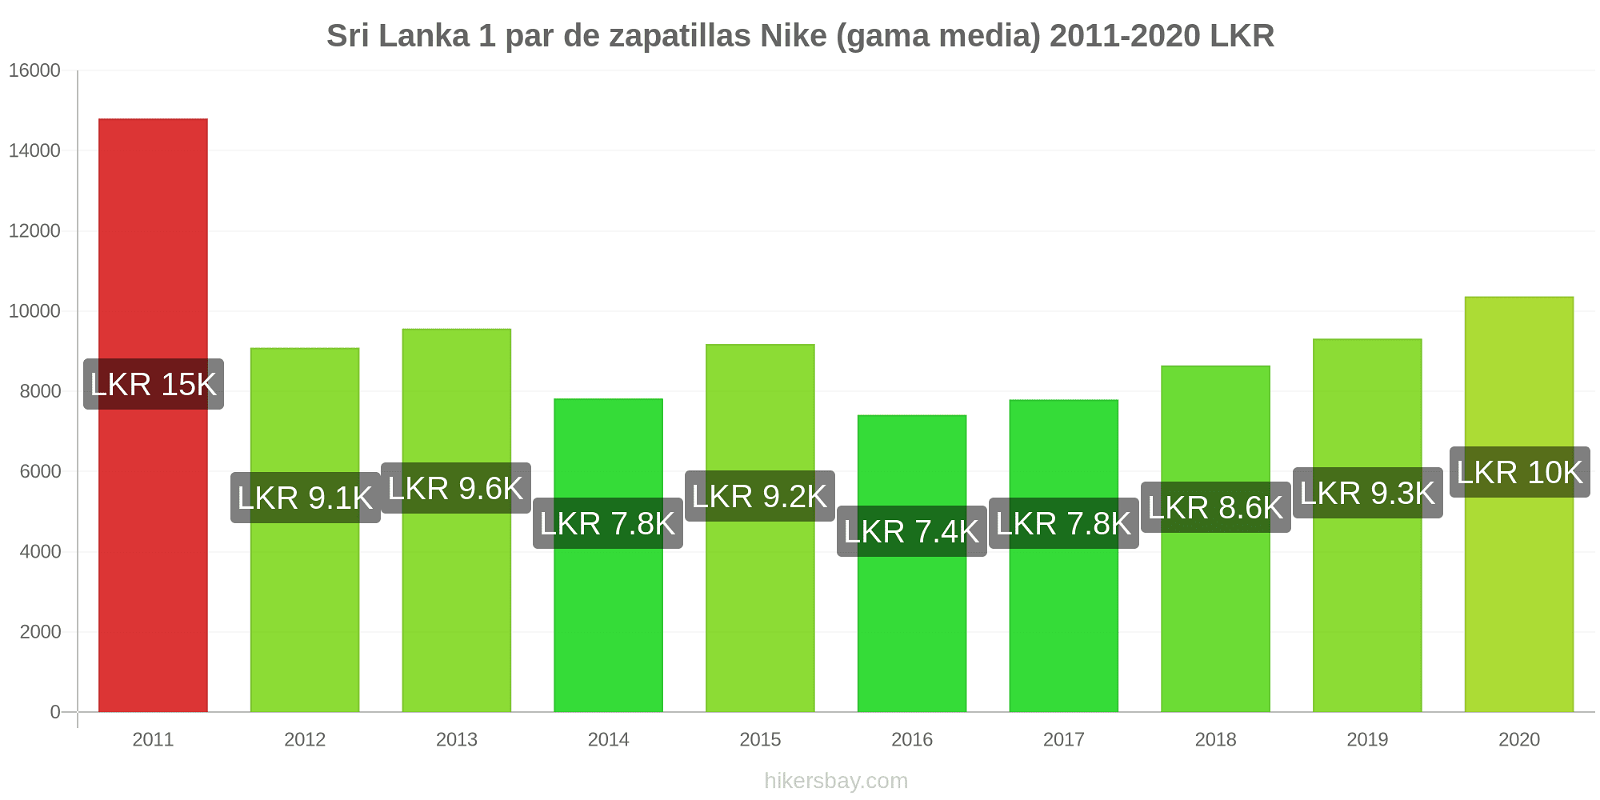 Sri Lanka cambios de precios 1 par de zapatillas Nike (gama media) hikersbay.com